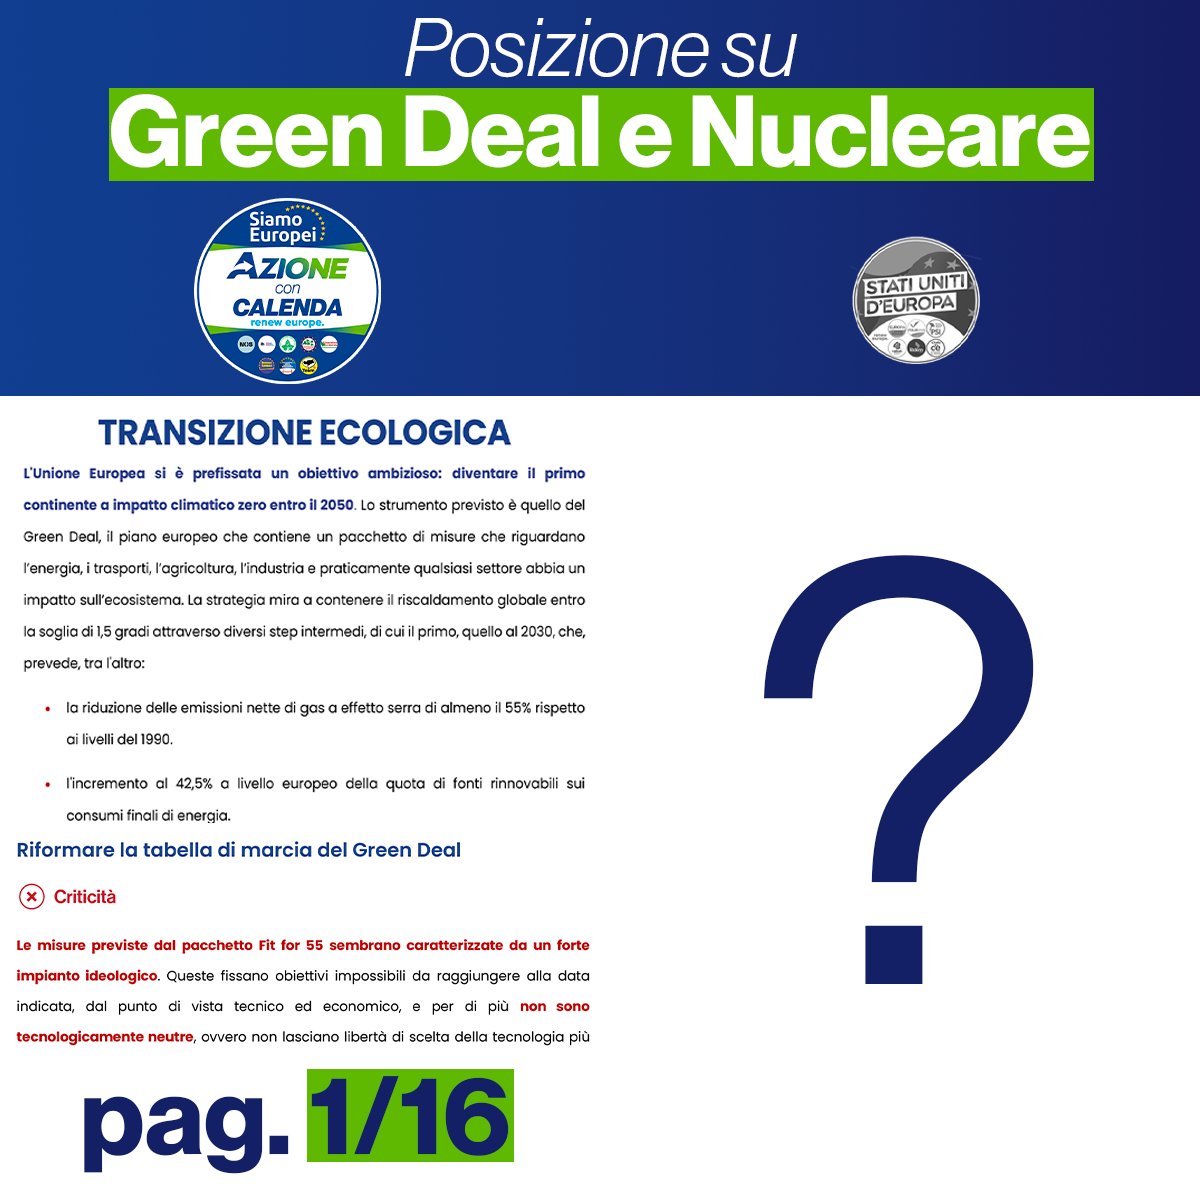 Nel programma di Stati Uniti d’Europa non c’è alcun riferimento al #GreenDeal e tanto meno al #Nucleare. Le posizioni nella lista sono infatti divergenti. PiuEuropa è favorevole all’attuale Green Deal senza nucleare così come i socialisti. Italia Viva pensa che Timmermans,